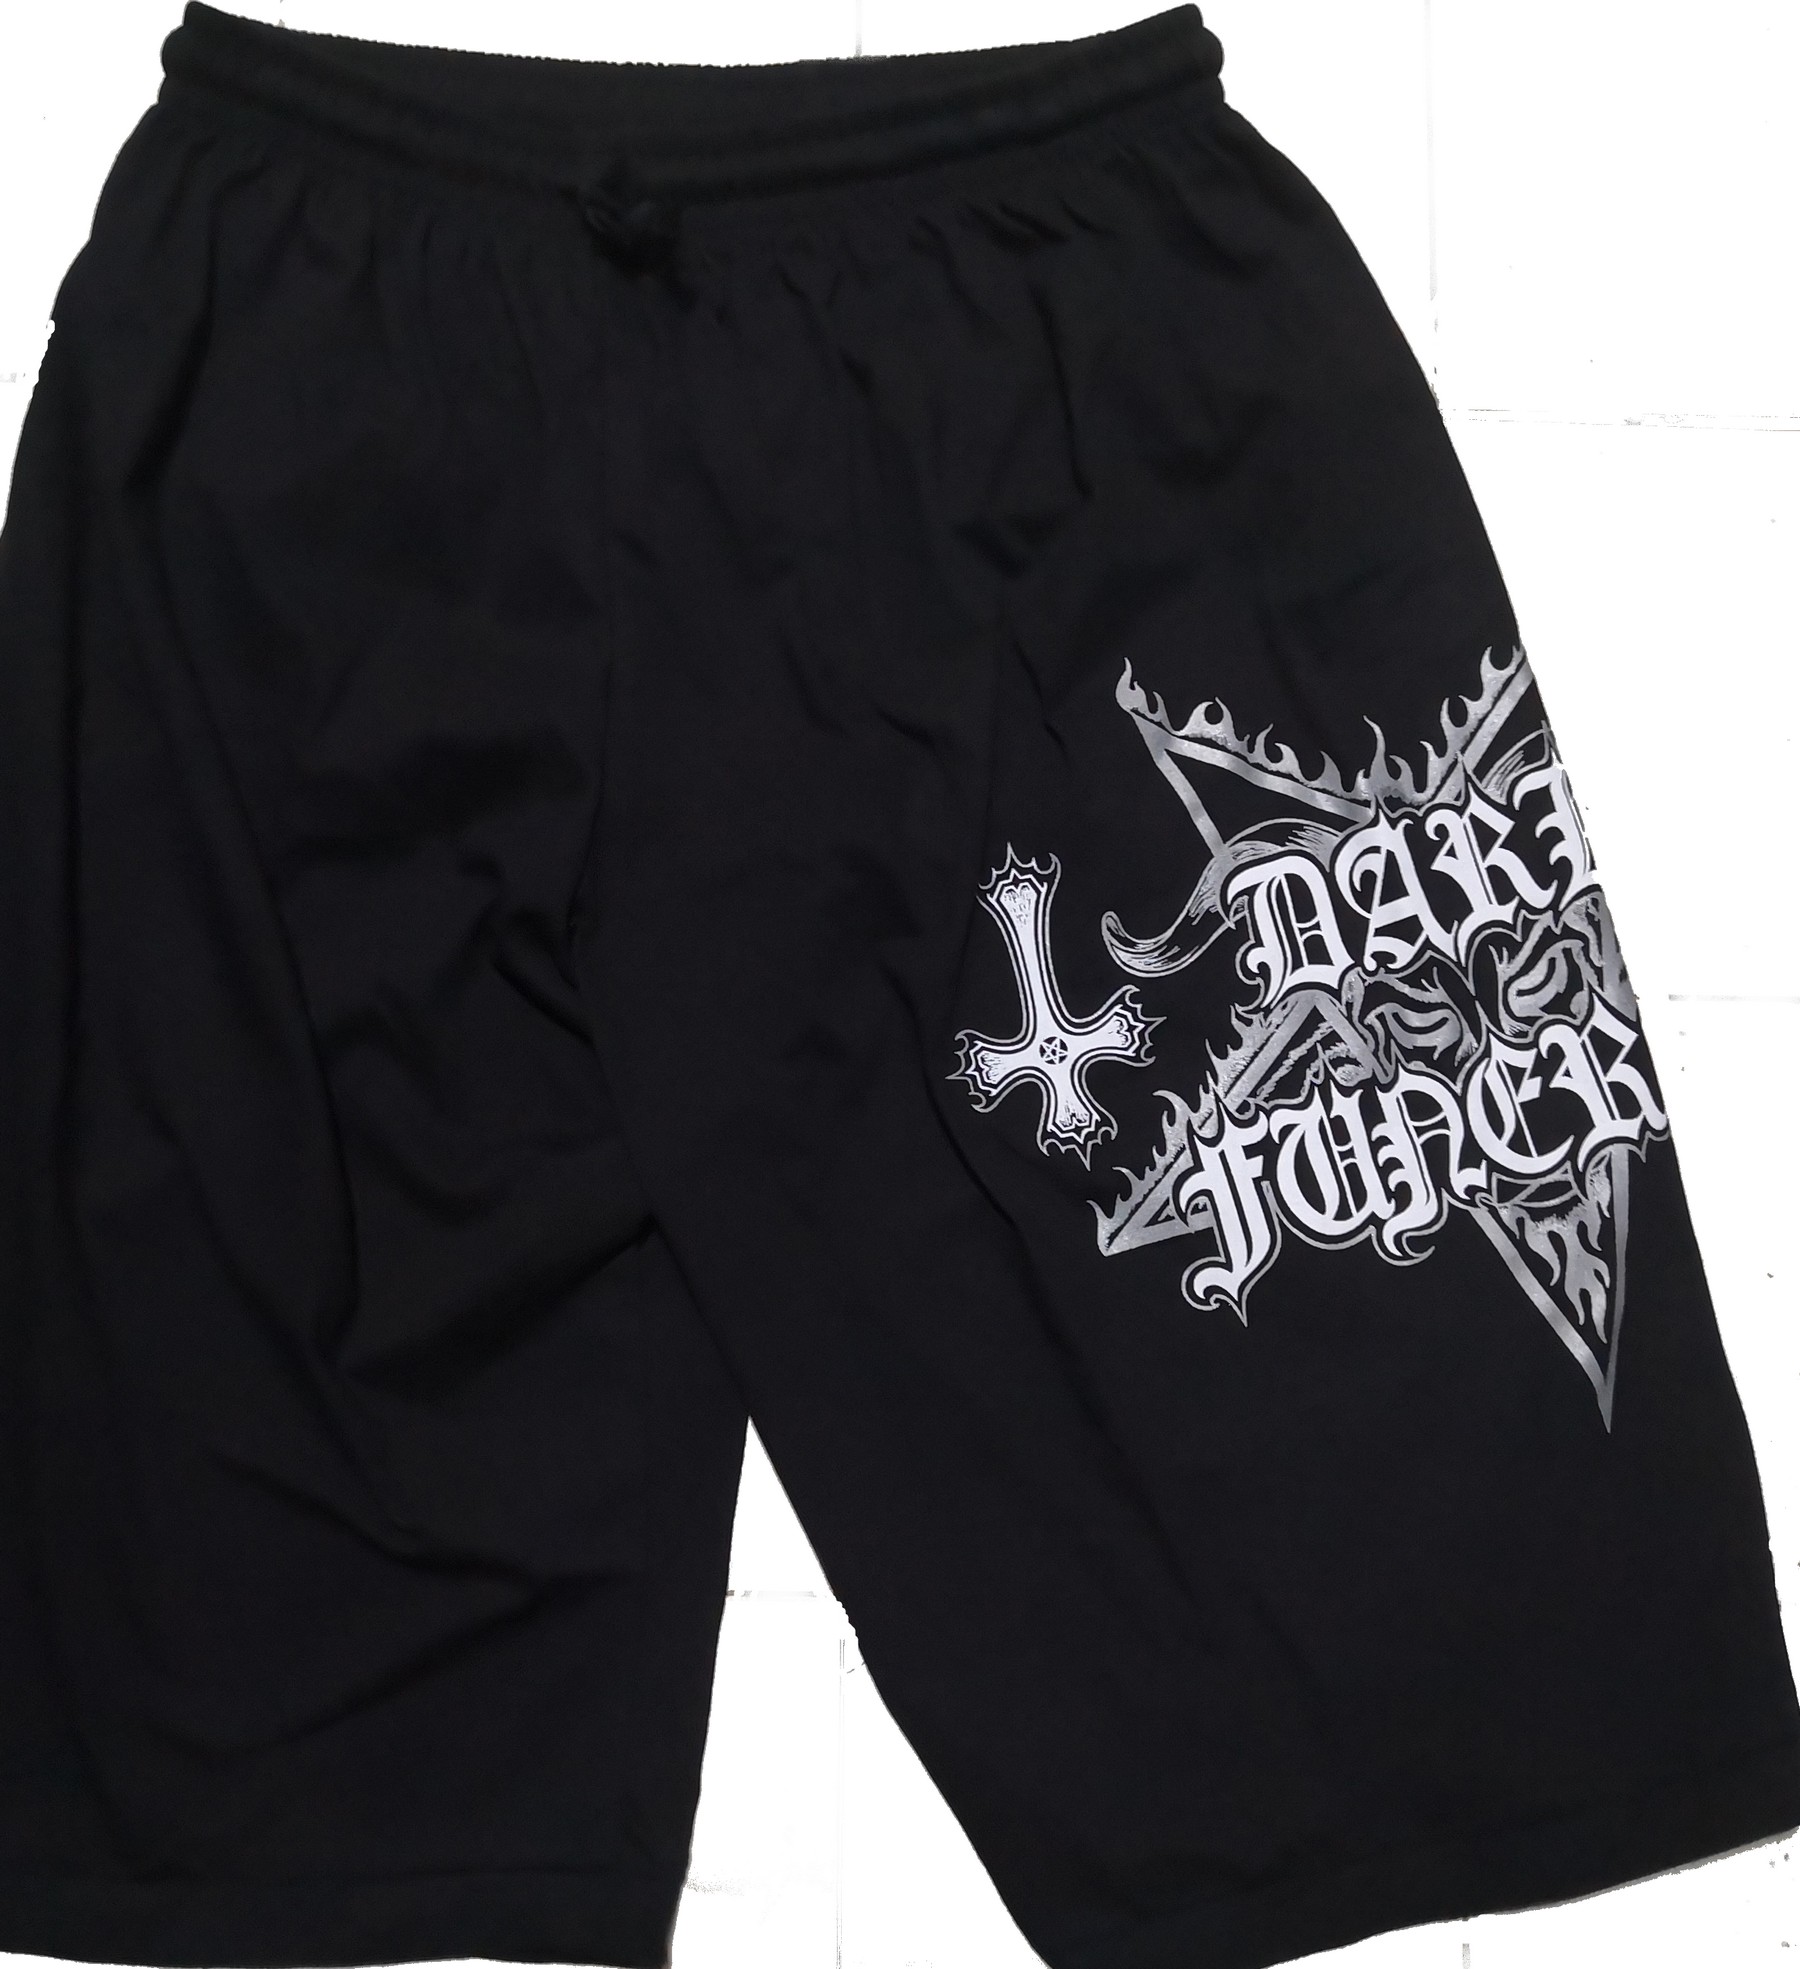 Dark Funeral shorts – RoxxBKK